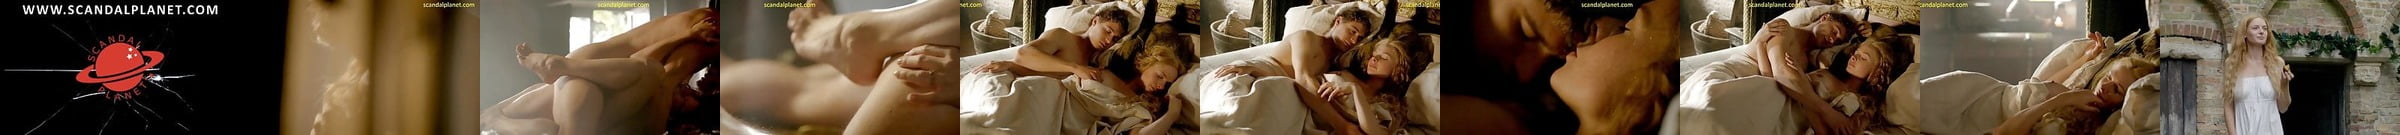 Diane Kruger Nude Scene In Troy Movie Scandalplanet Com